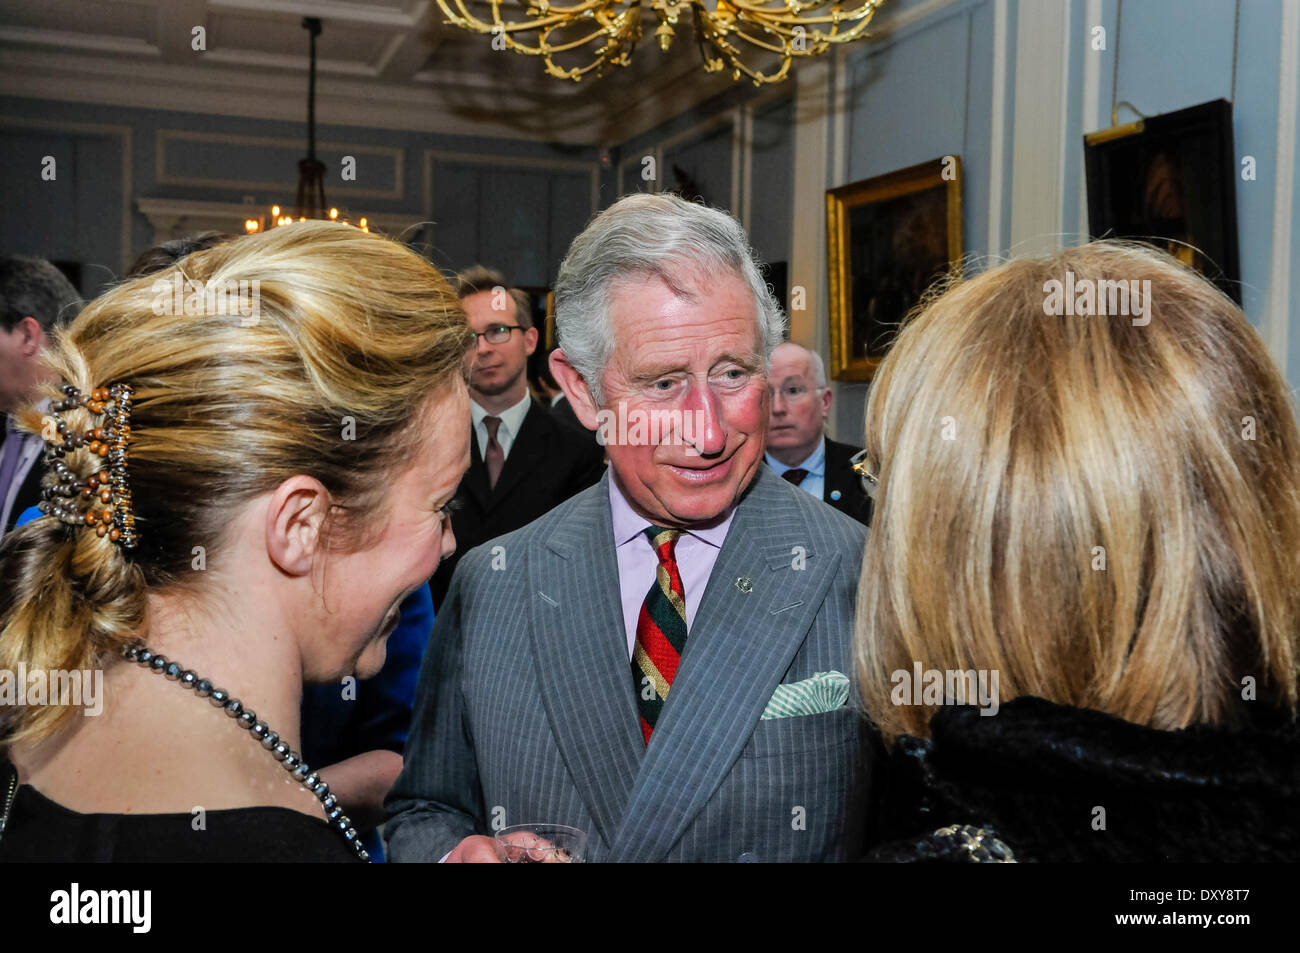 Hillsborough, Nordirland. 1. April 2014 - Prinz Charles, Prinz von Wales, trifft sich mit Northern Ireland Tourist Board-Mitgliedern bei der Hillsborough Castle Credit: Stephen Barnes/Alamy Live News Stockfoto